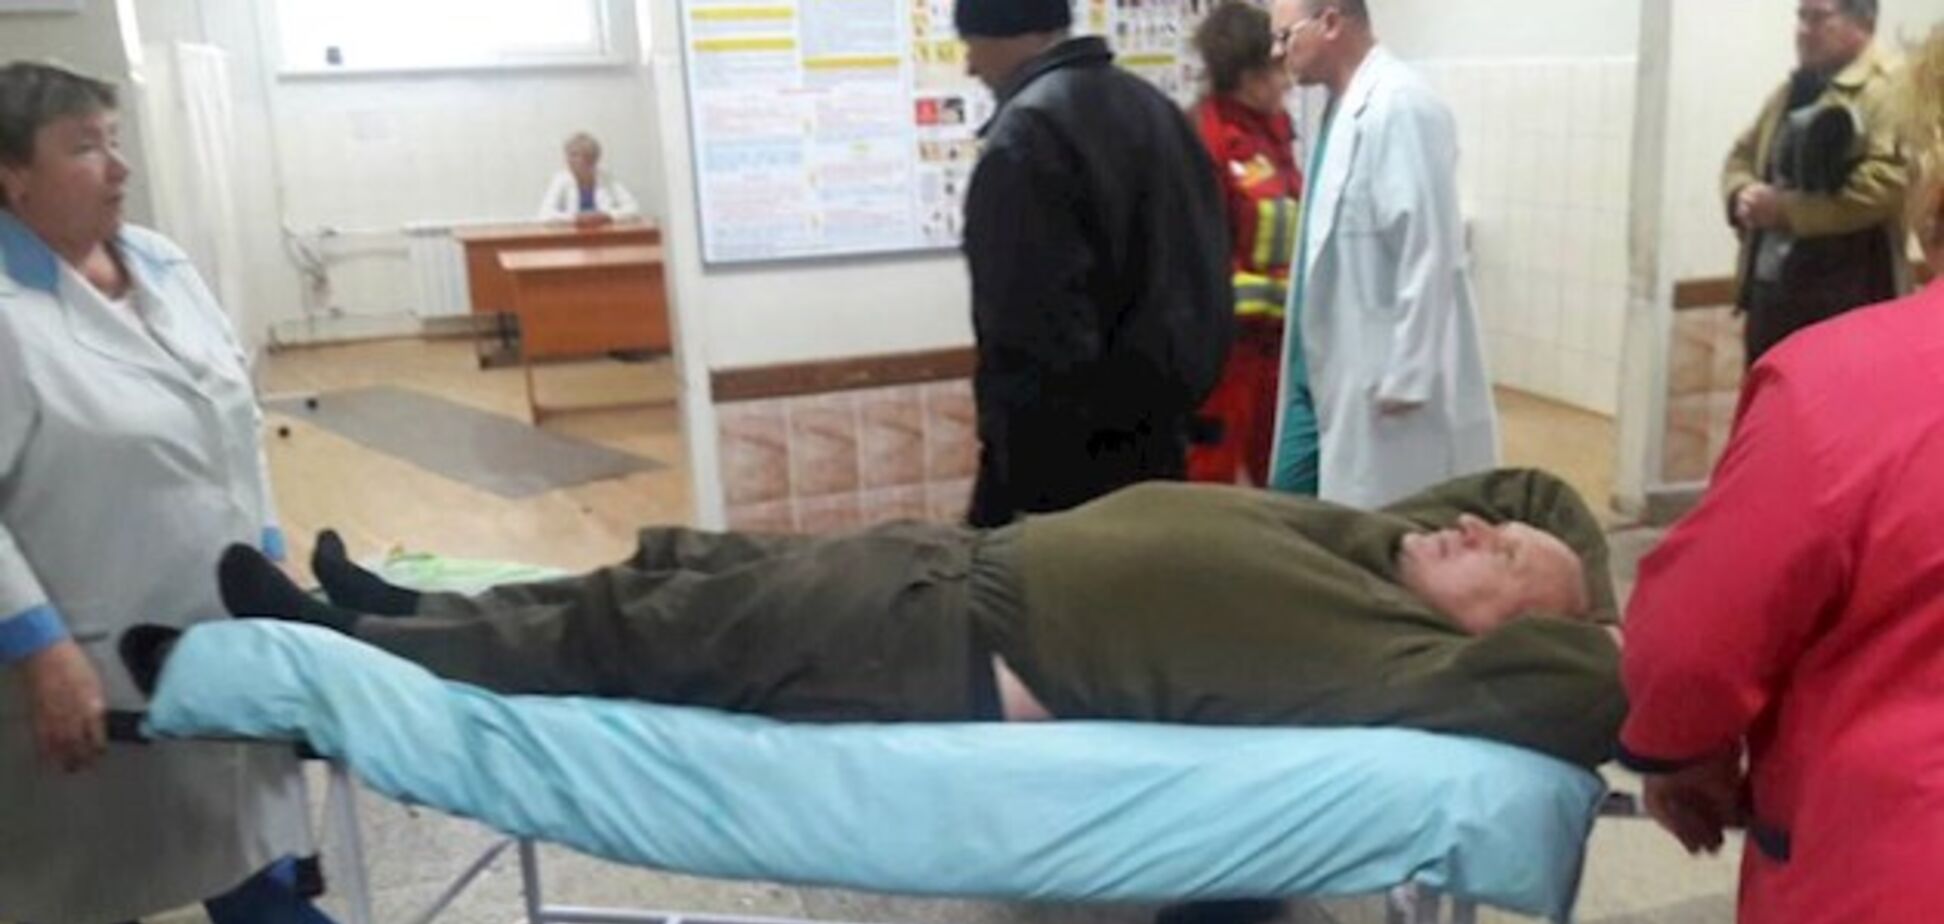  'Была договоренность': жена Коханивского рассказала, как ему проломили голову в суде